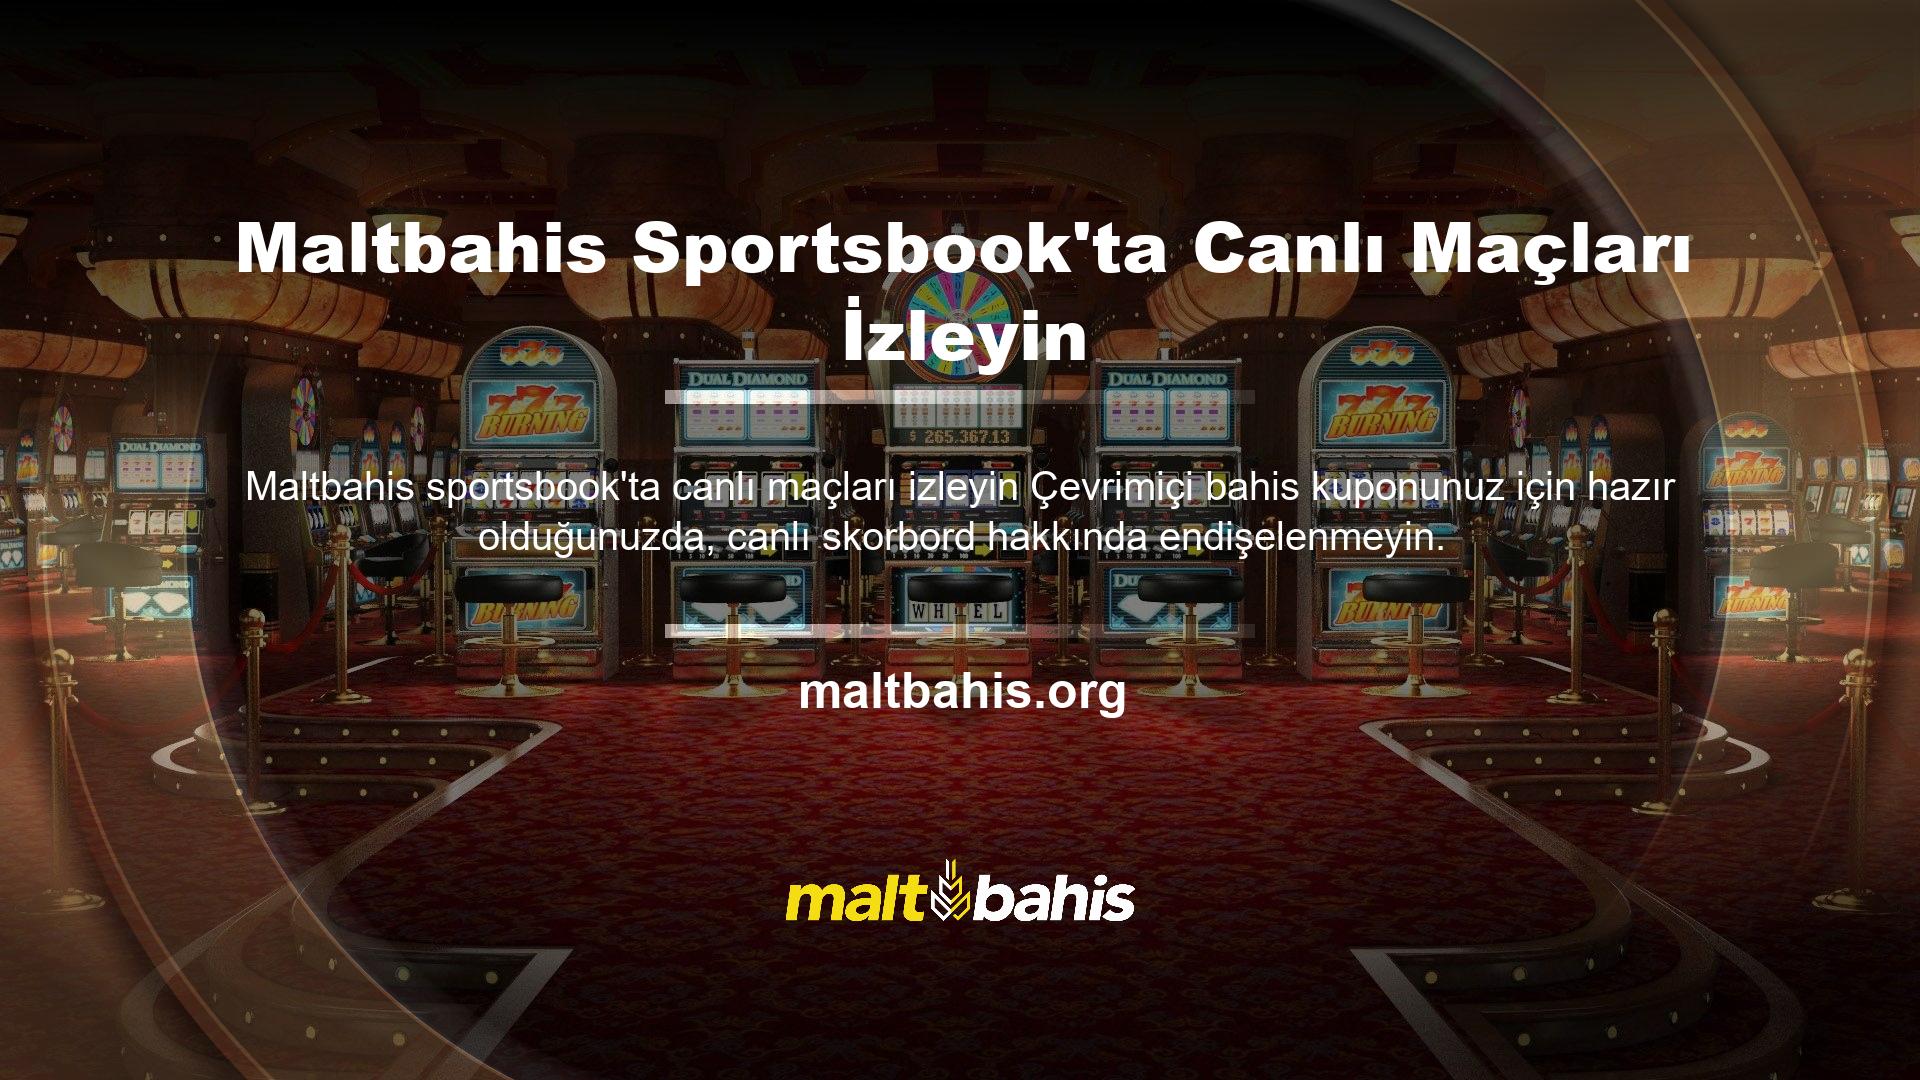 Maltbahis TV size maçı ücretsiz olarak izleme ve maçı doğrudan bahis kuponunuzdan takip etme fırsatı veriyor